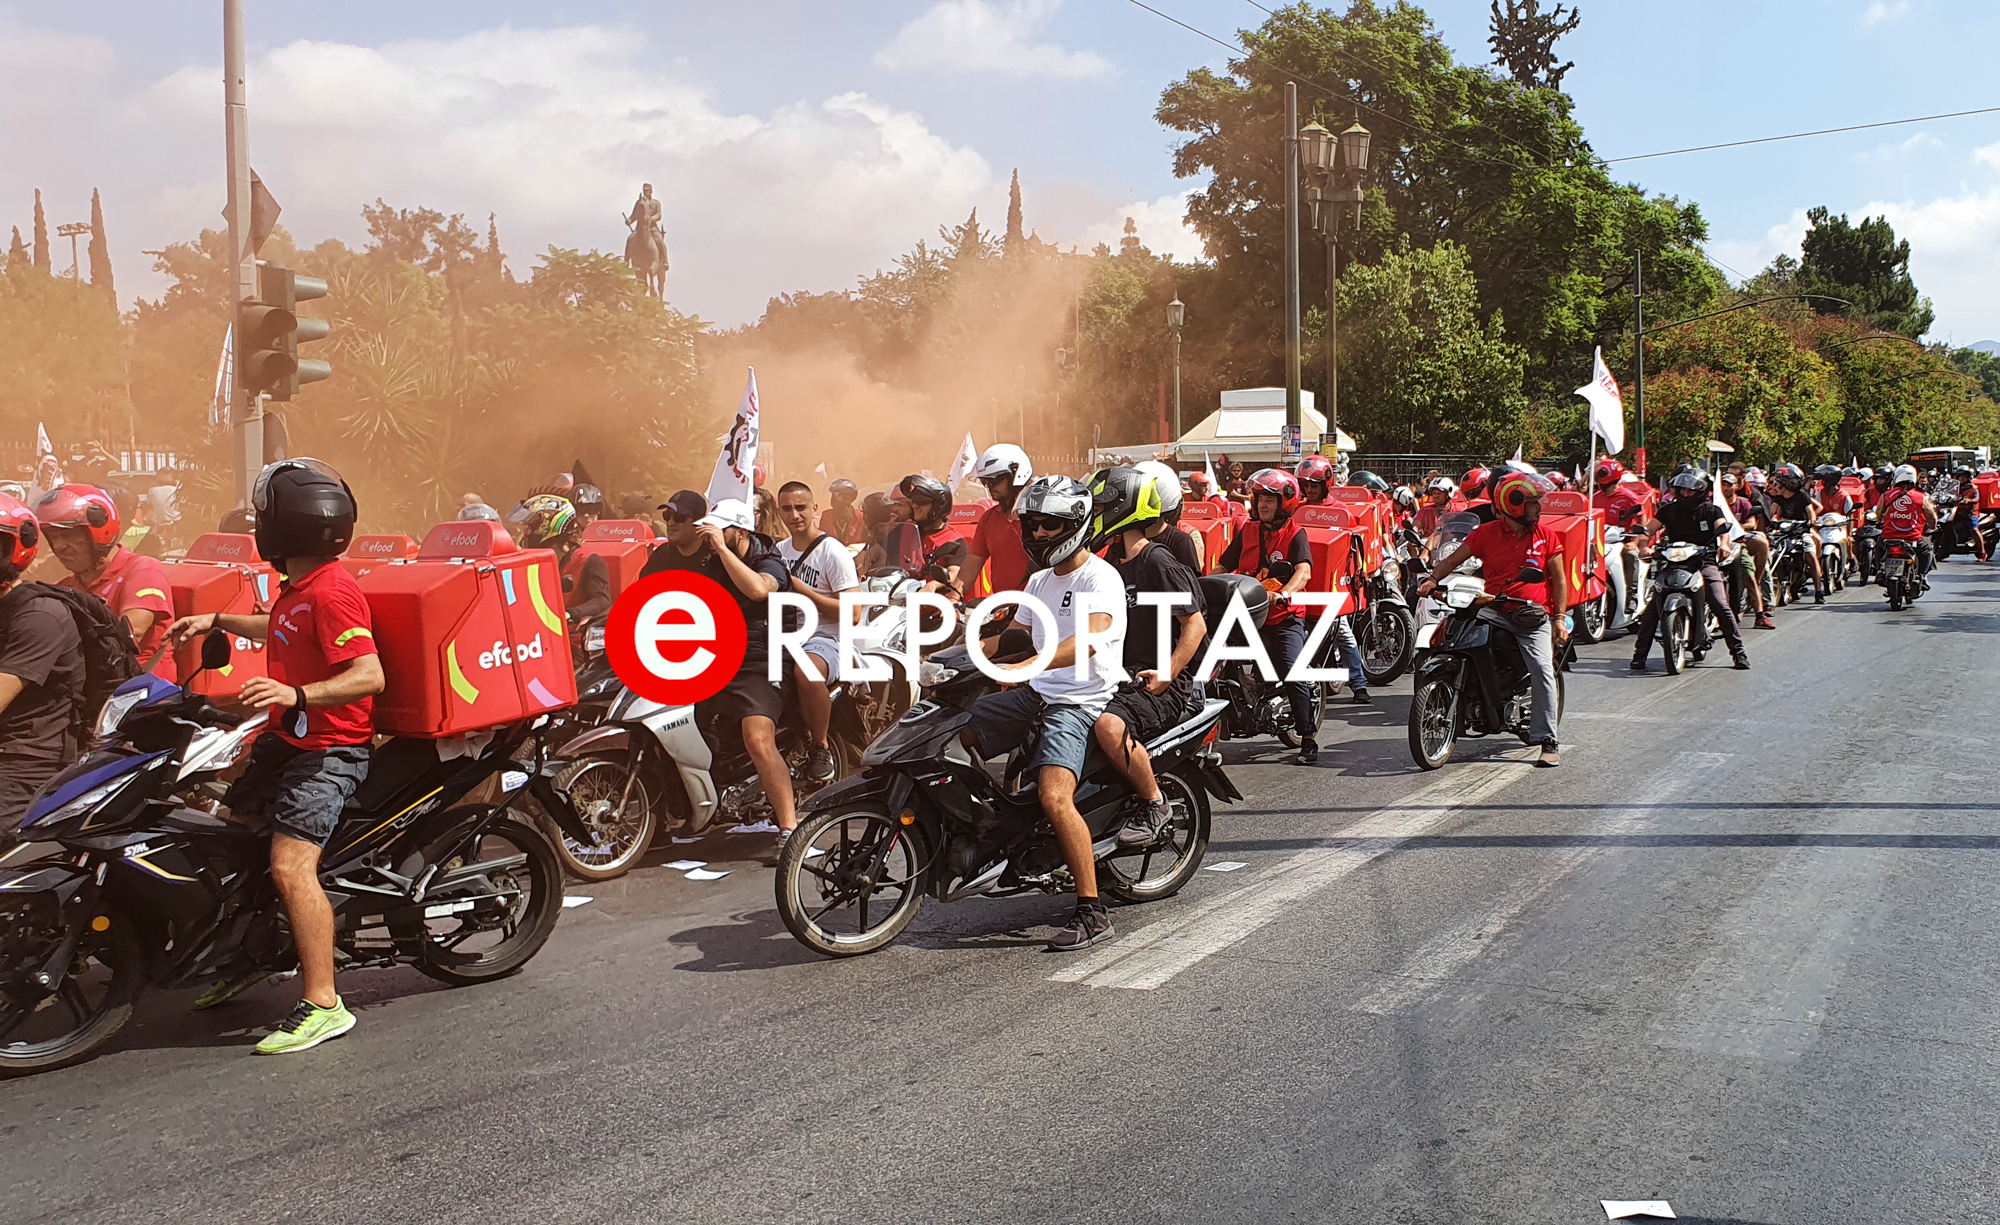 Efood: Μαζική κινητοποίηση από χιλιάδες διανομείς οδηγούς δικύκλων - 24ωρη απεργία την Παρασκευή